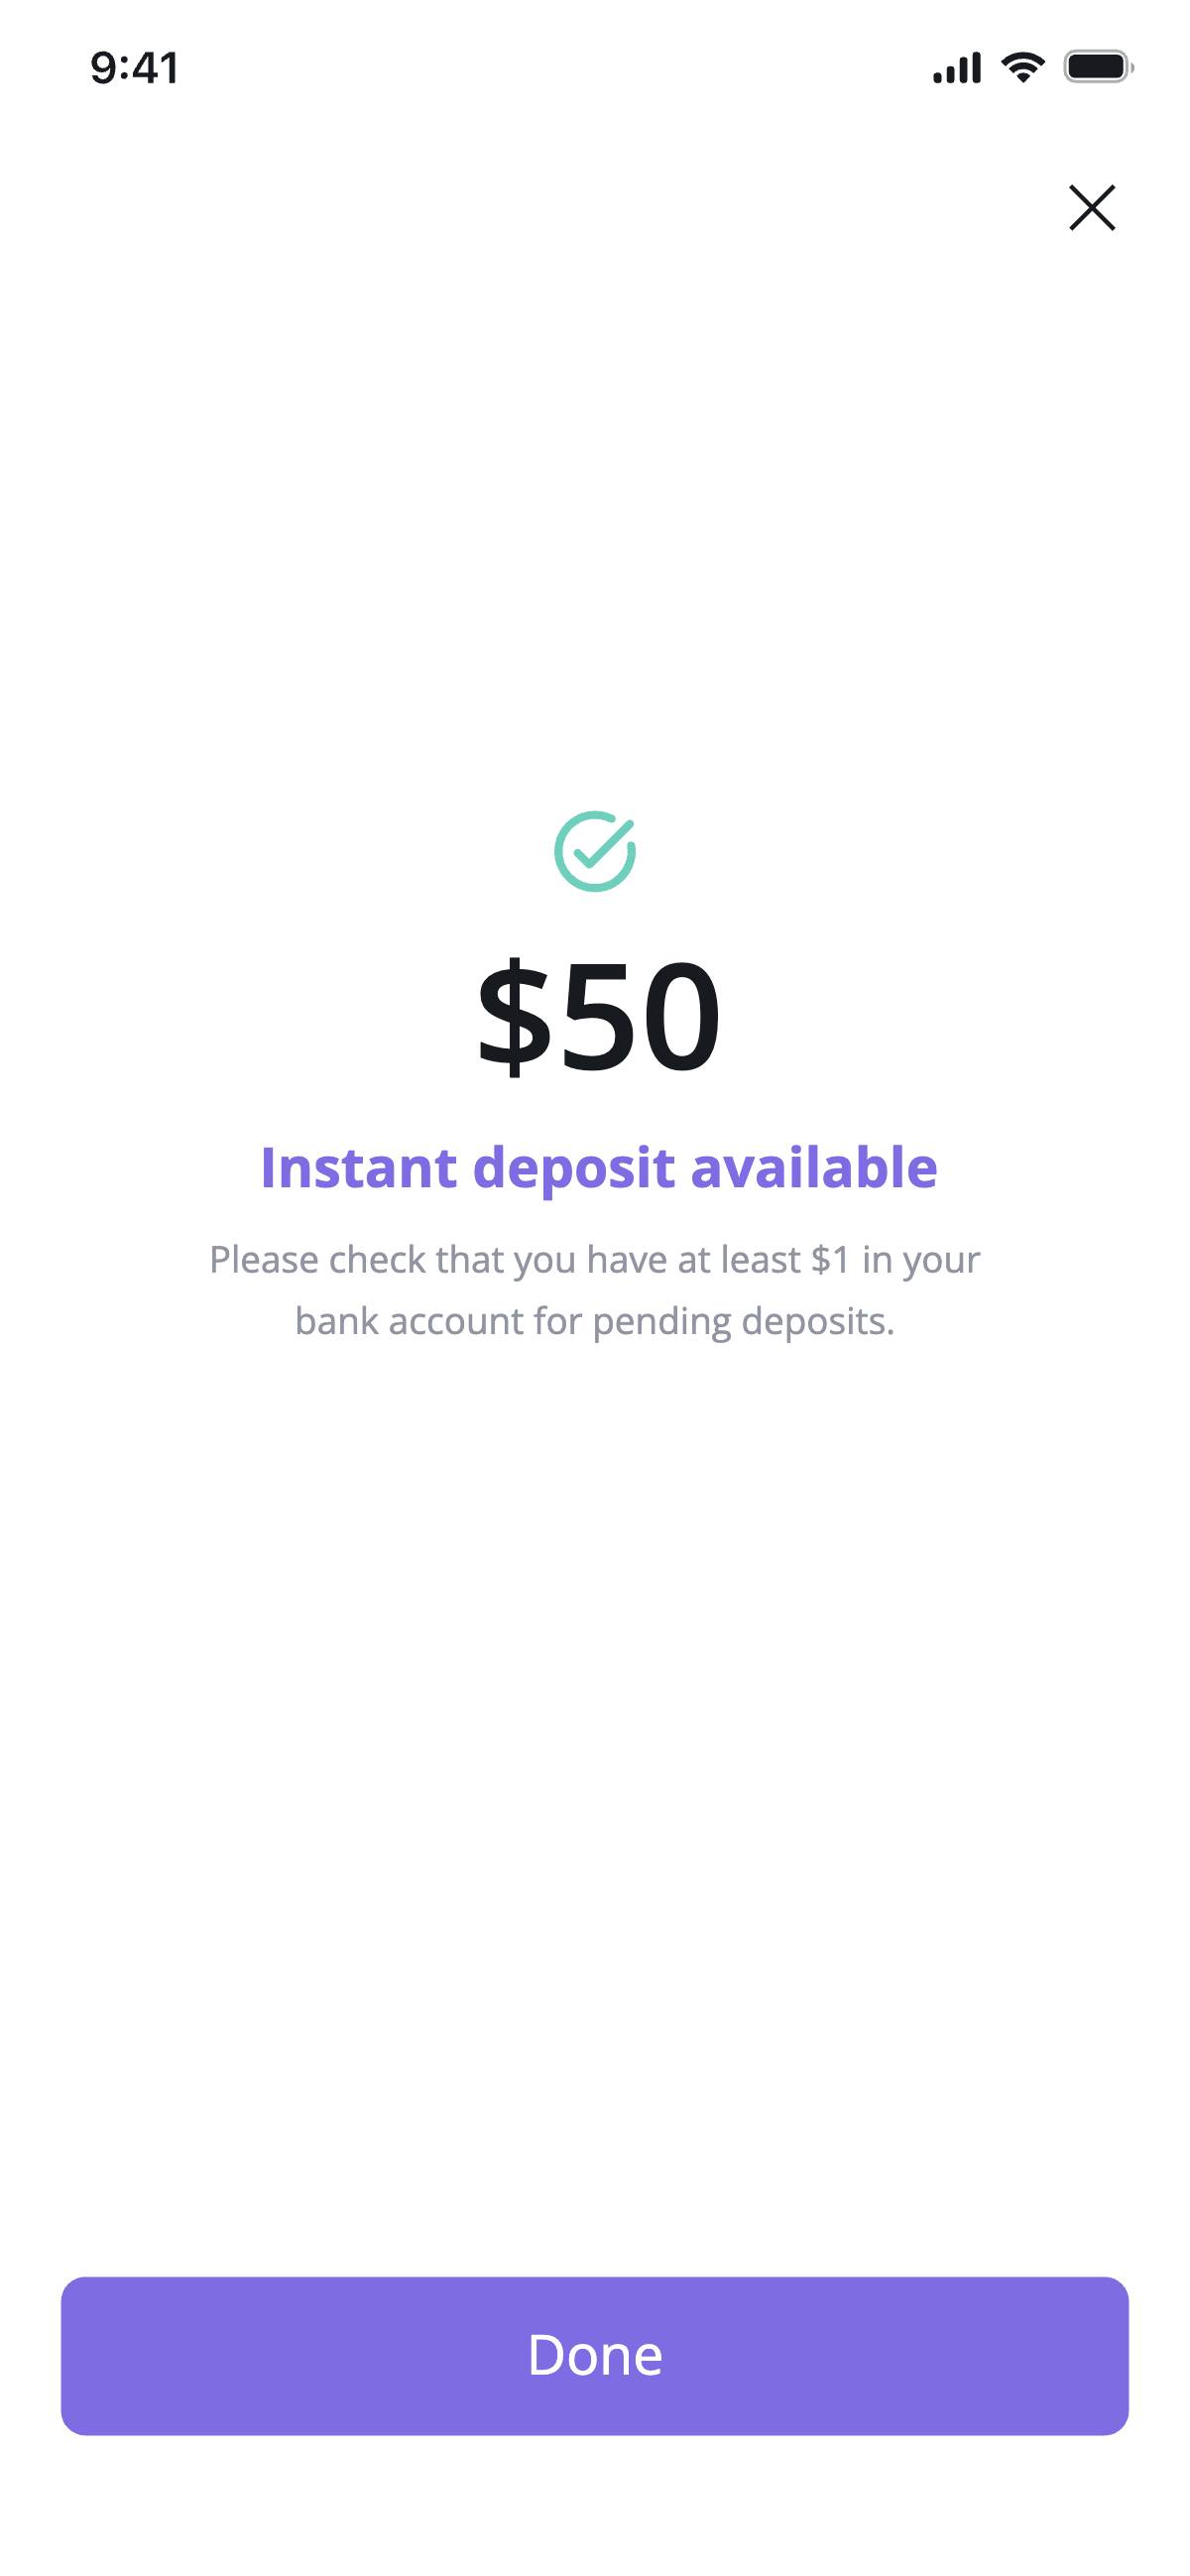 Deposit - Payment success